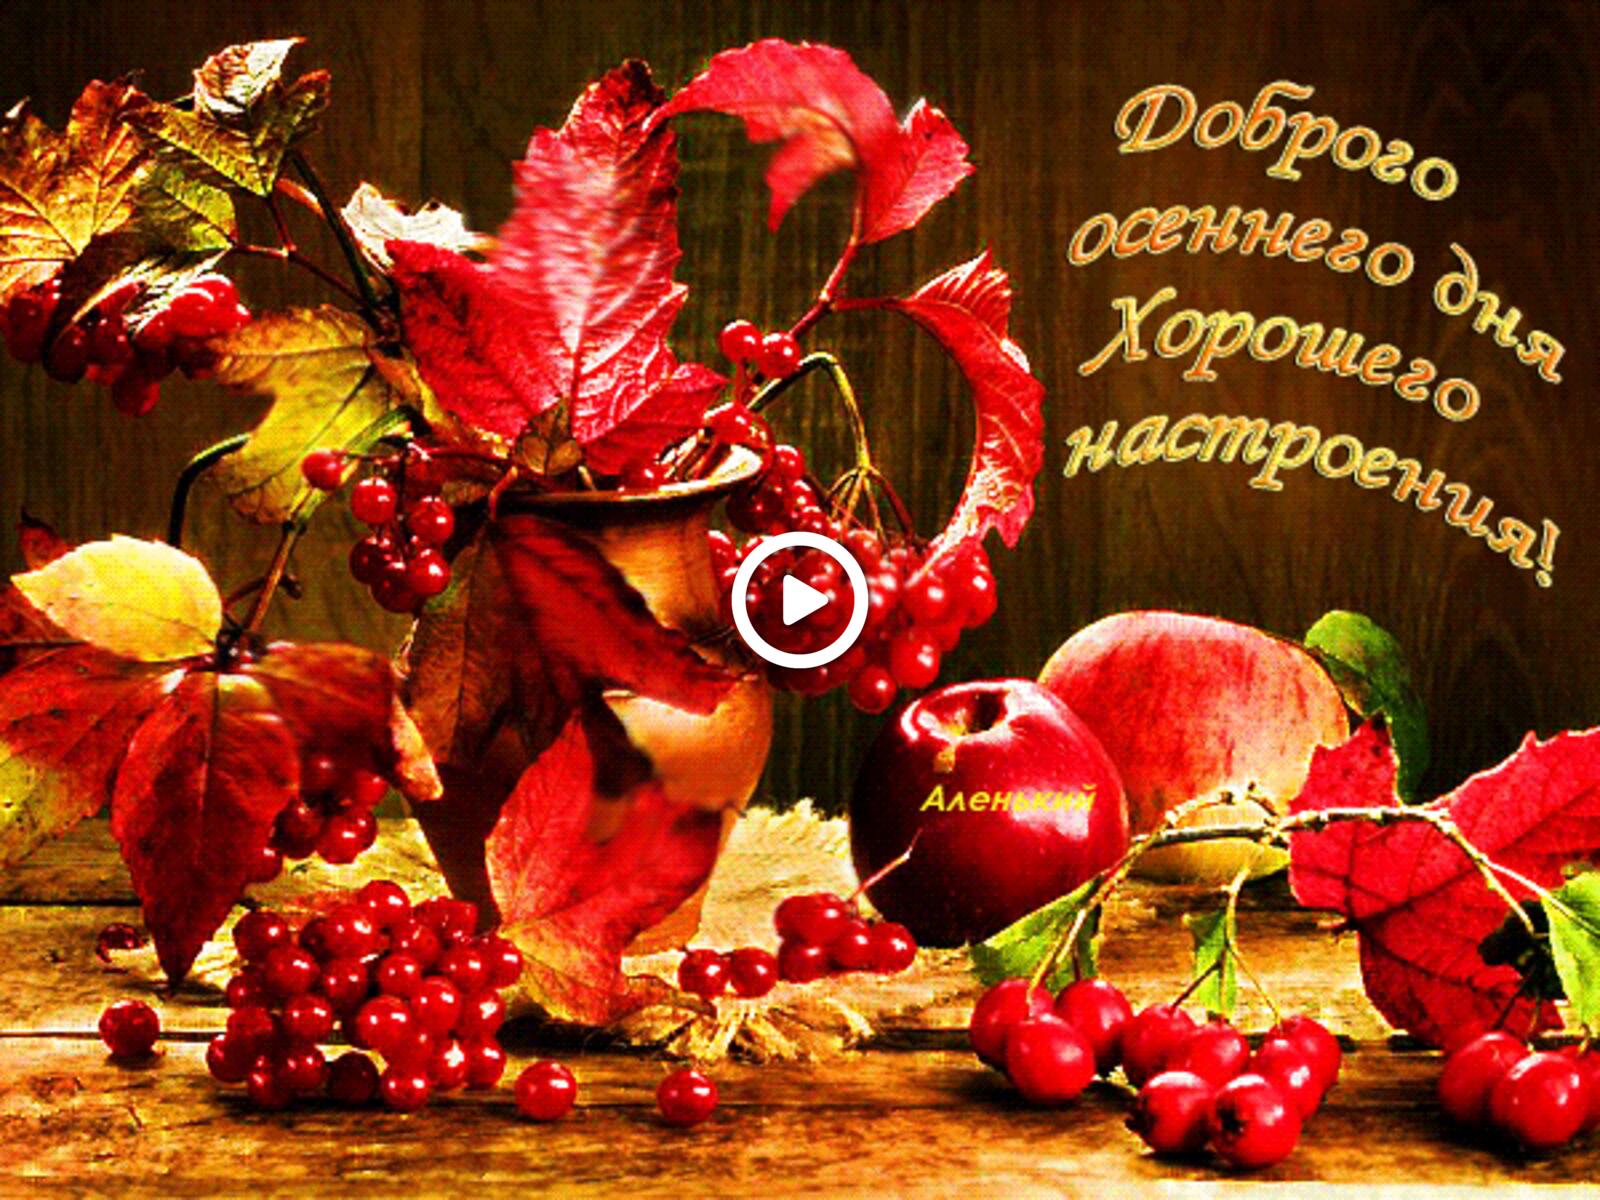 Открытка на тему фрукты доброго октябрьского дня ягоды бесплатно